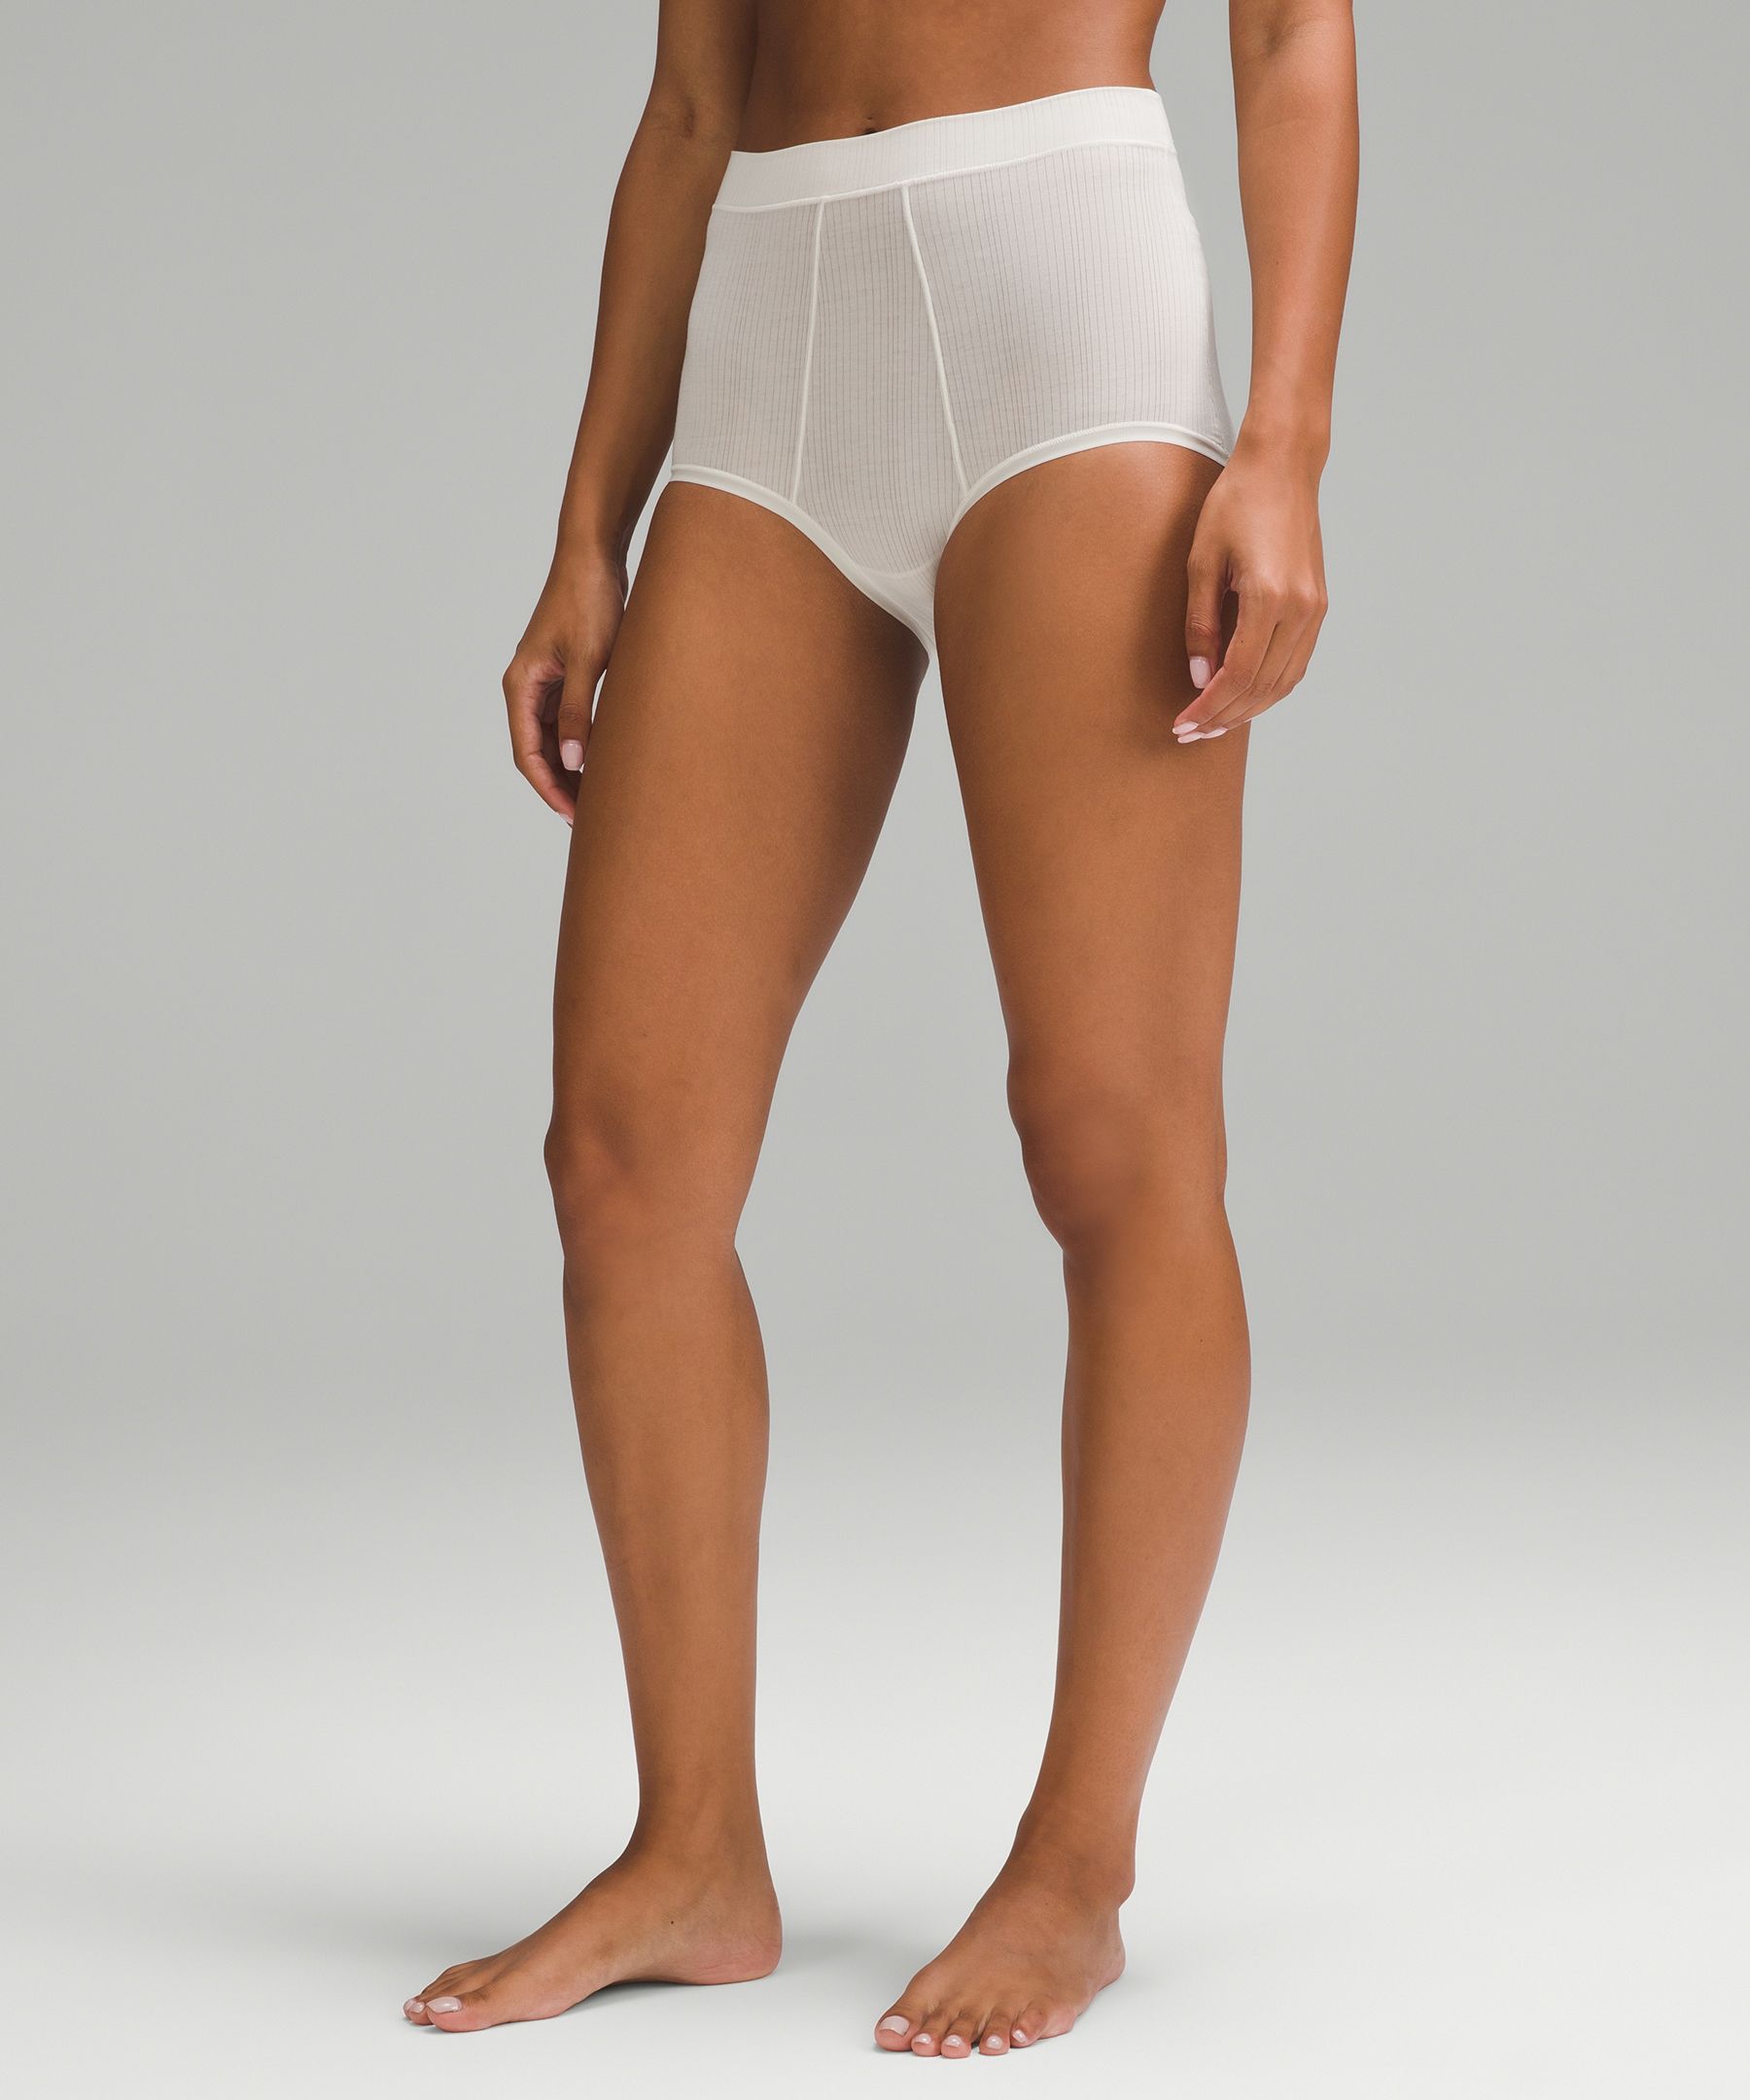 Lululemon athletica UnderEase Ribbed High-Waist Thong Underwear *3 Pack, Women's  Underwear